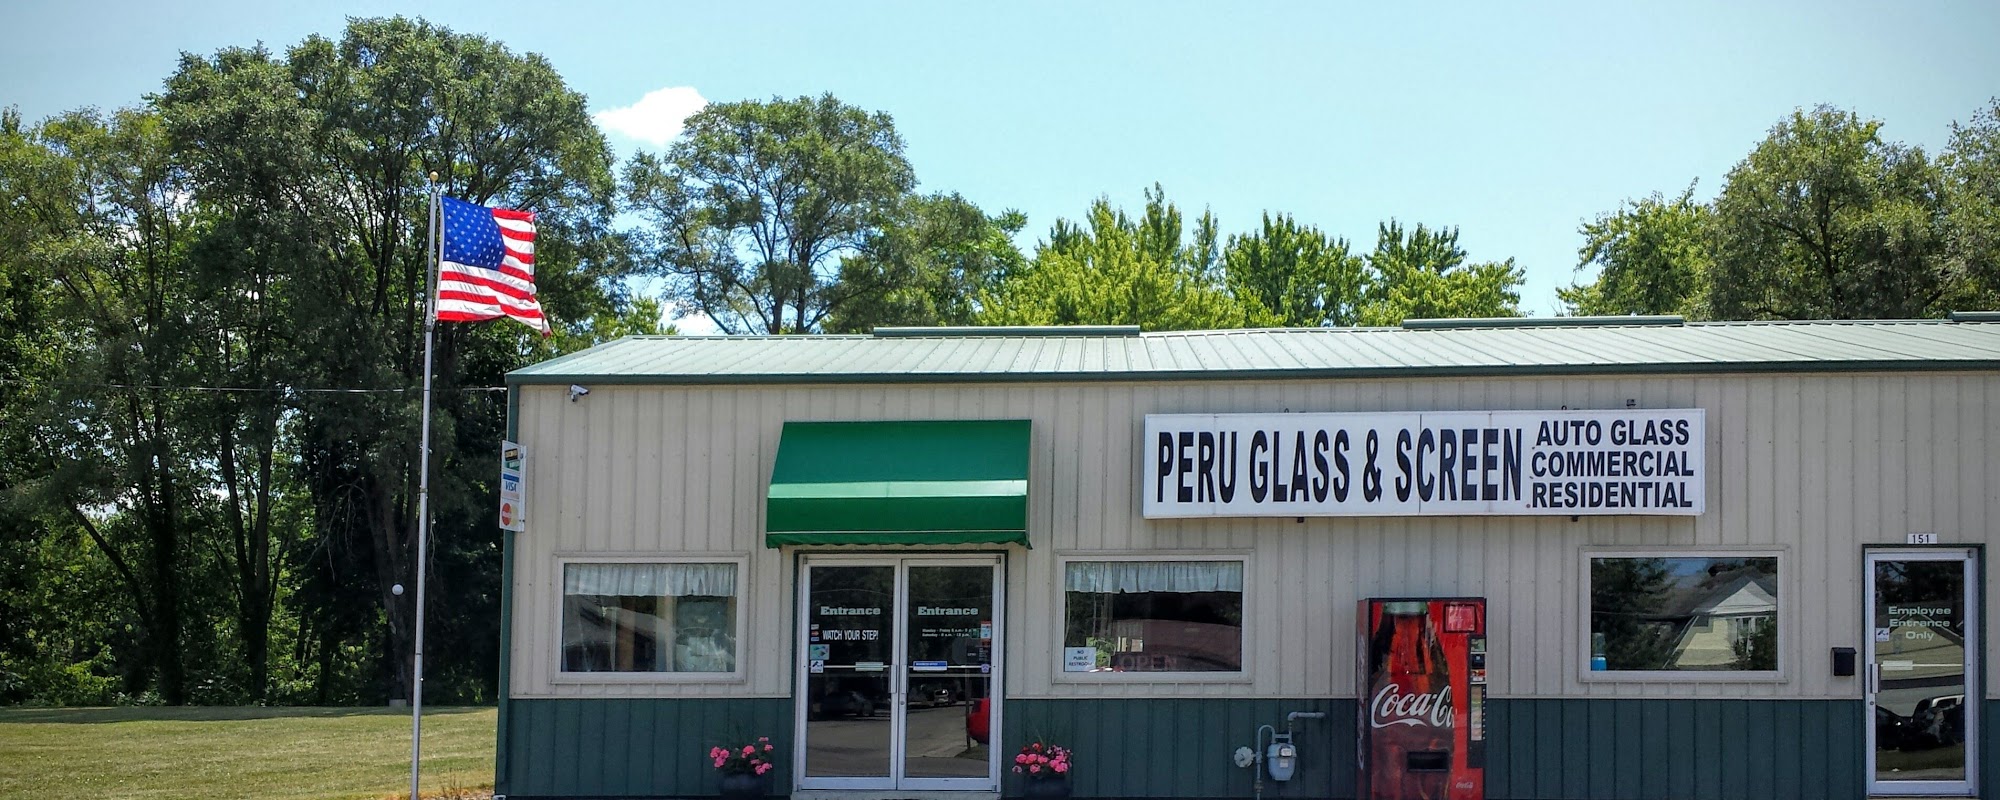 Peru Glass & Screen Inc